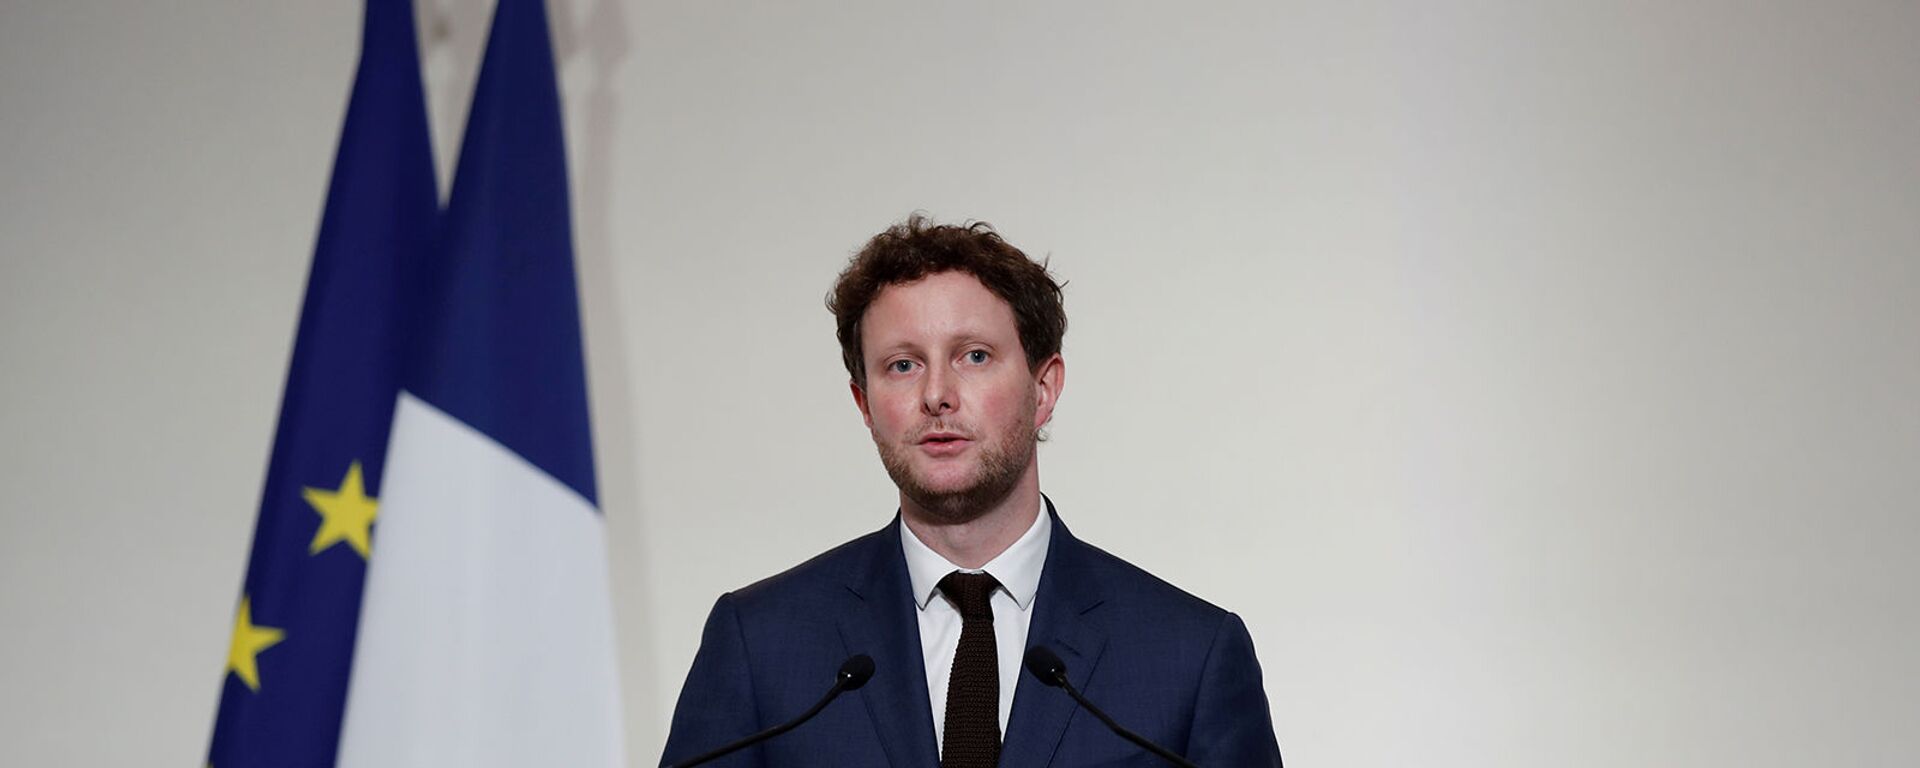 Младший министр Франции по европейским делам Клеман Бон на пресс-конференции (3 декабря 2020). Париж - Sputnik Армения, 1920, 21.10.2021